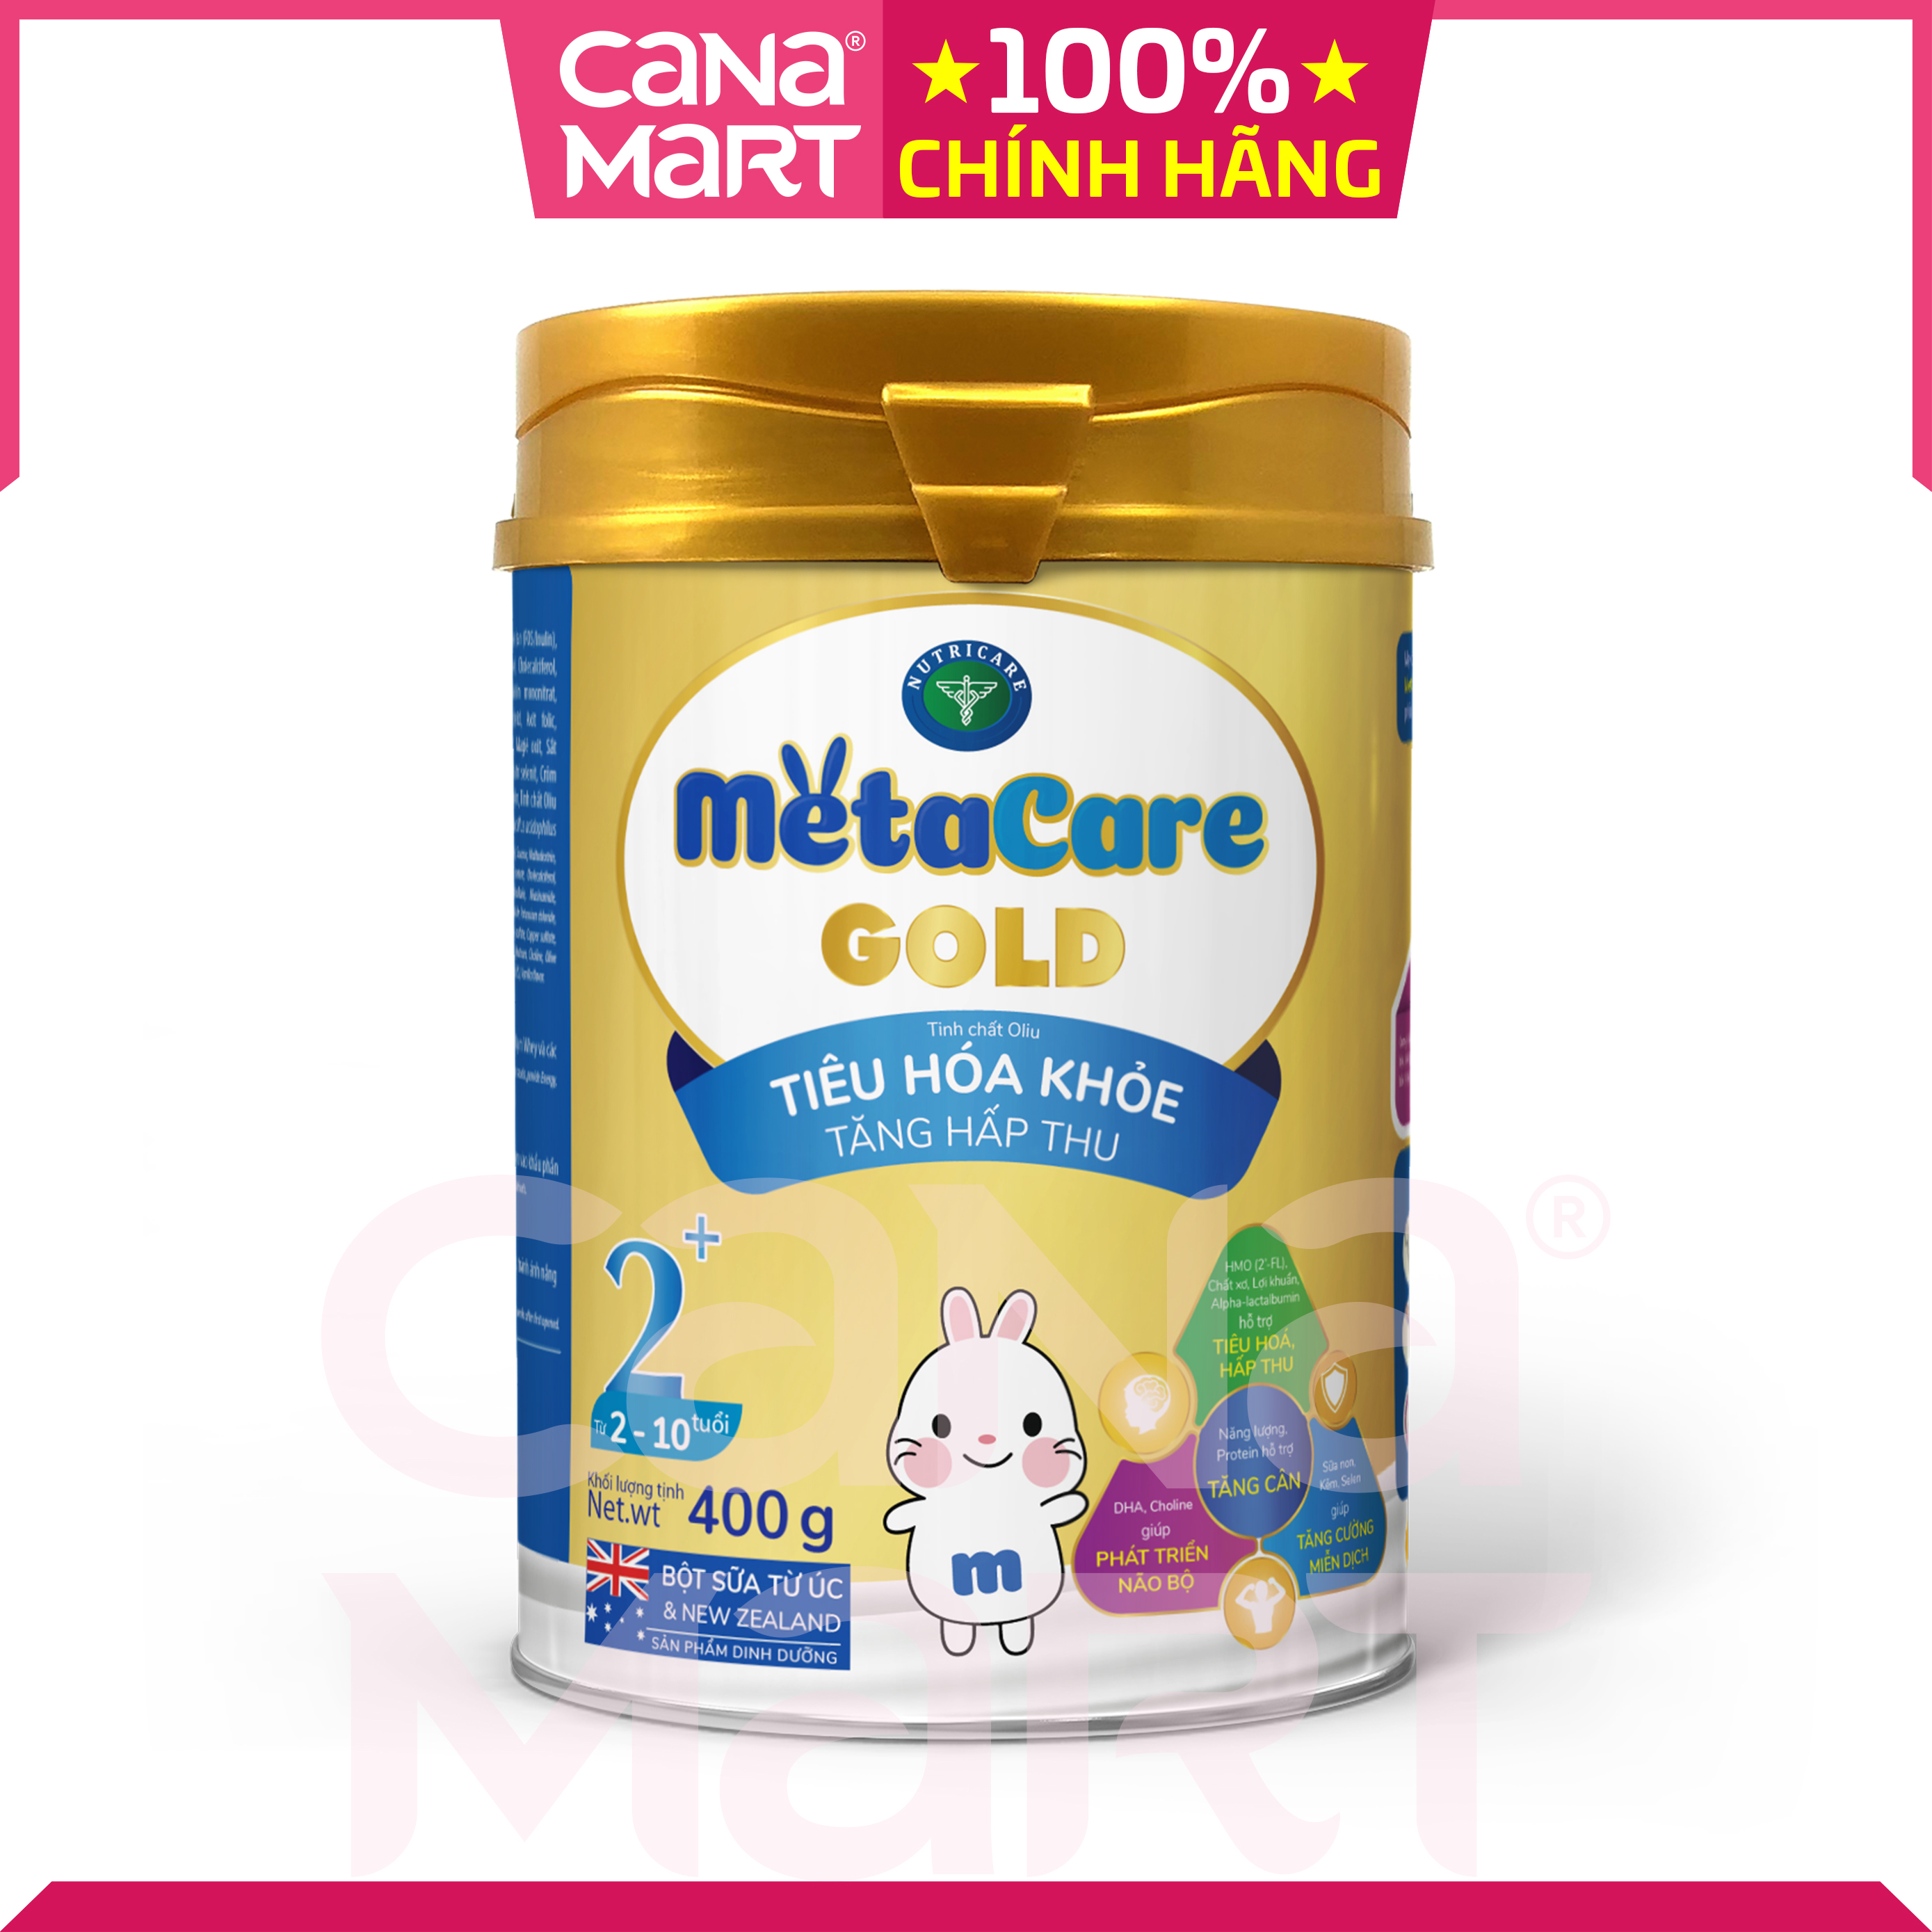 Sữa bột Nutricare MetaCare Gold 2+ giúp bé tiêu hóa khỏe, tăng hấp thu (400gr)